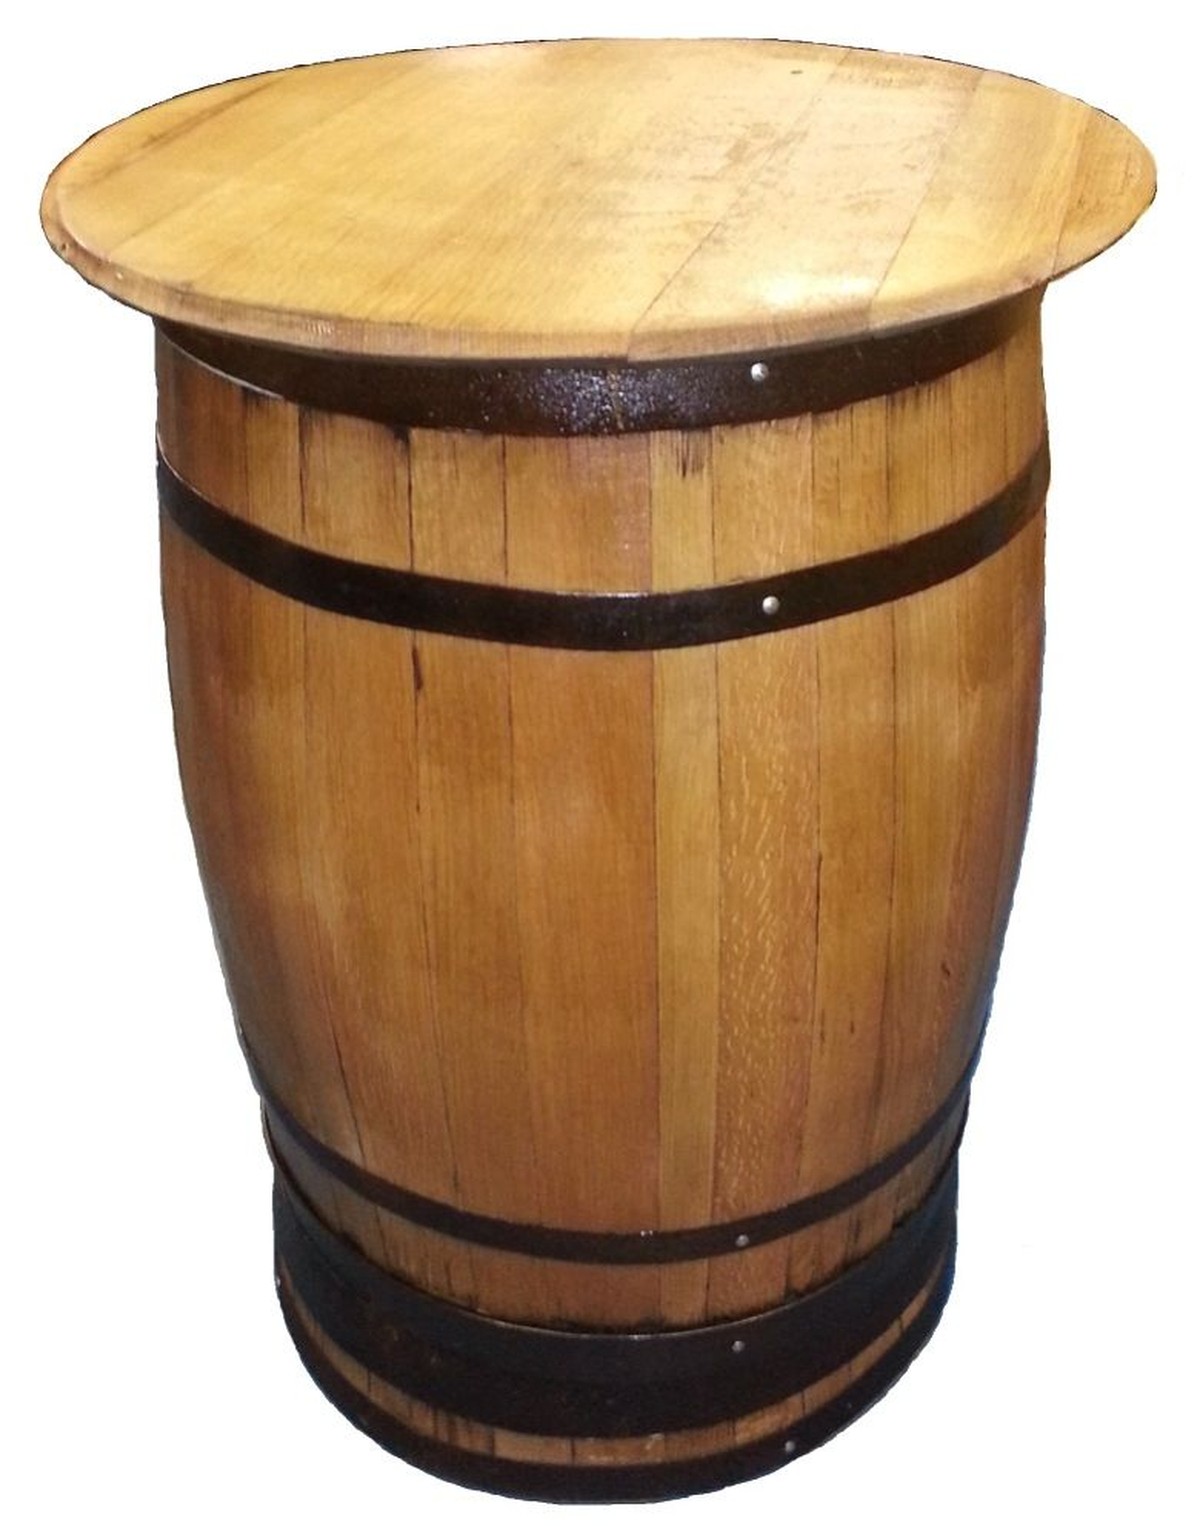 Secondhand Pub Equipment Pub Tables Pub Oak Barrel Table